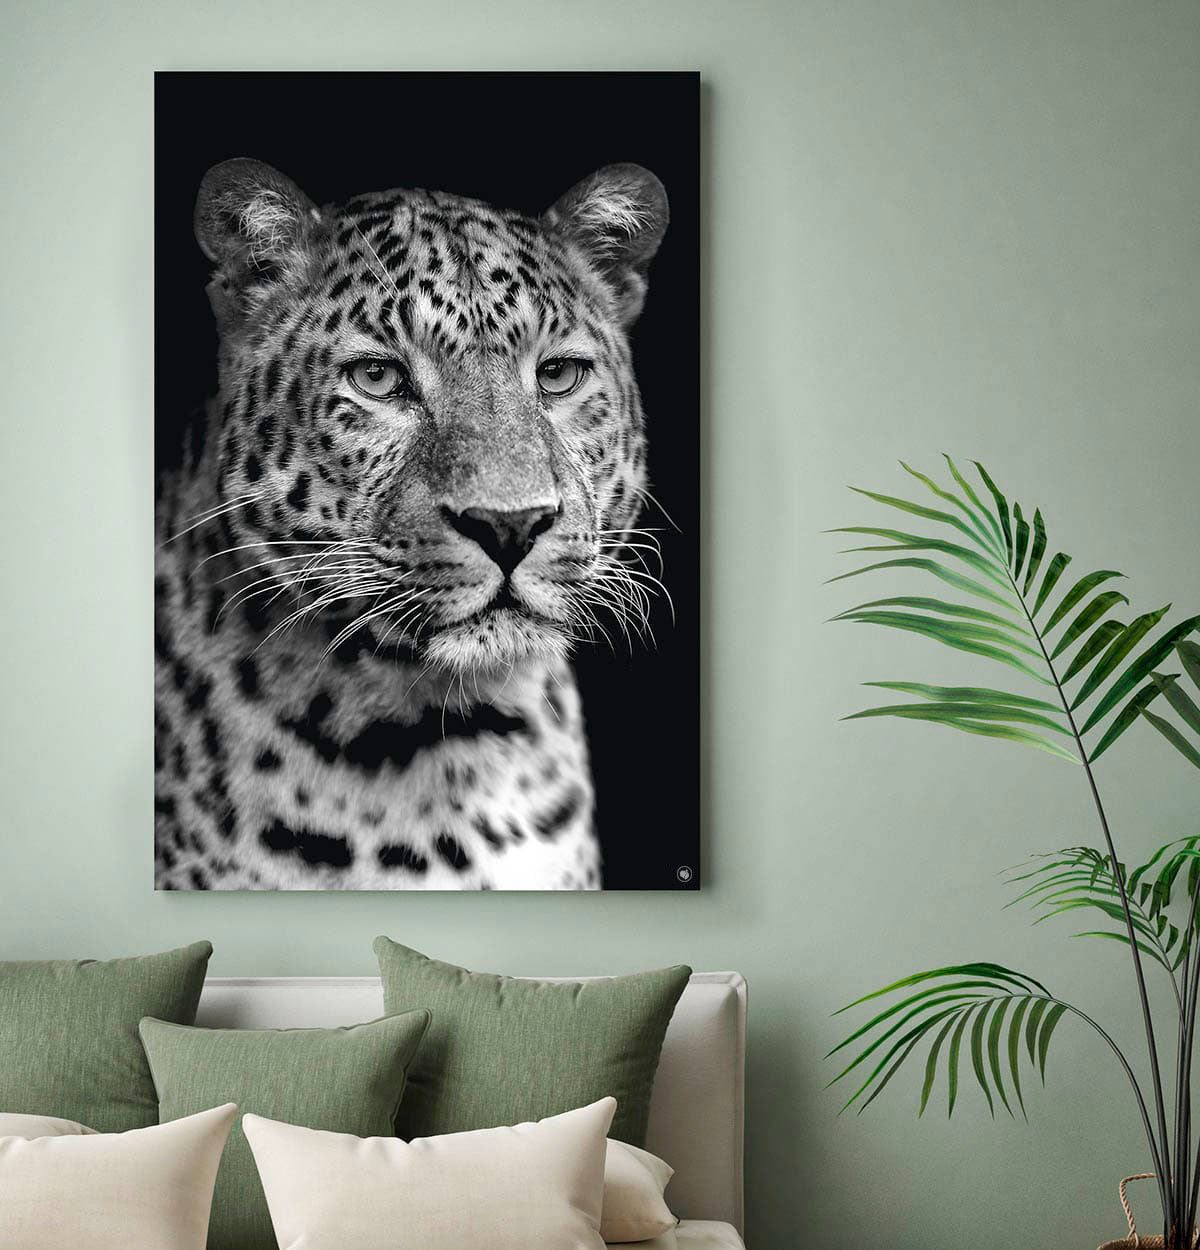 Vierkante wanddecoratie met een luipaard in het zwart-wit erop